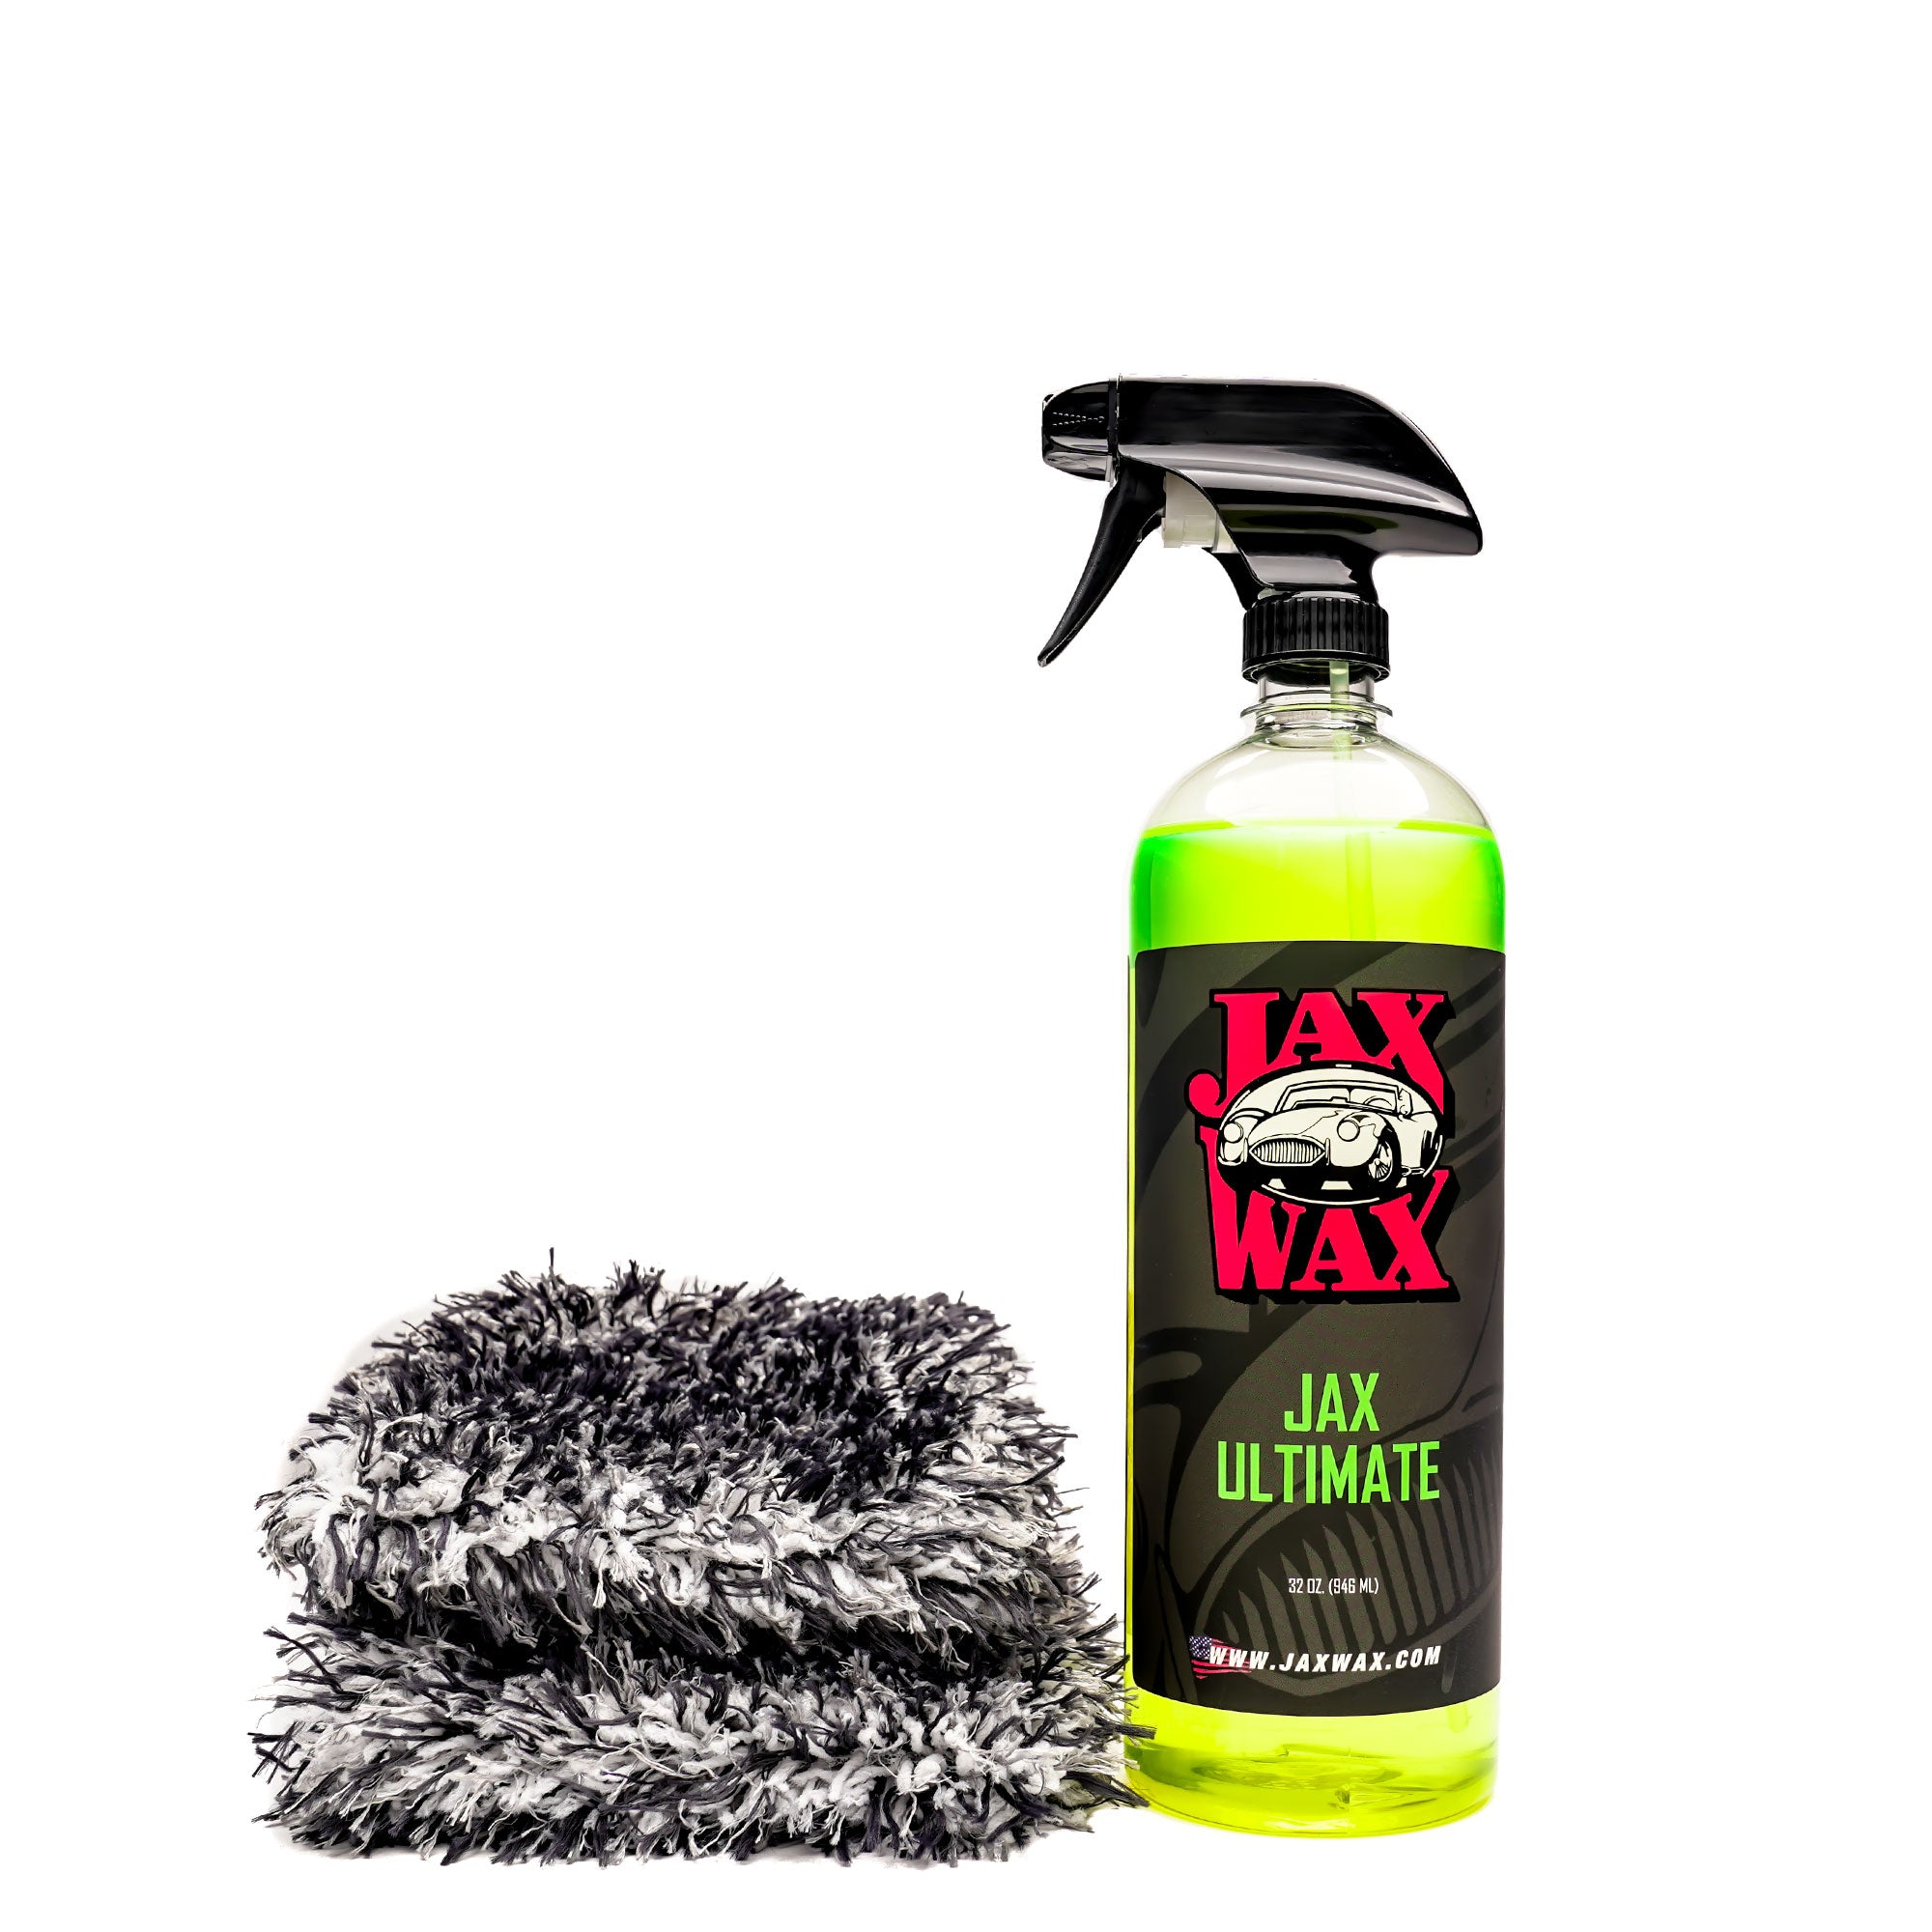 Kits - Jax Wax